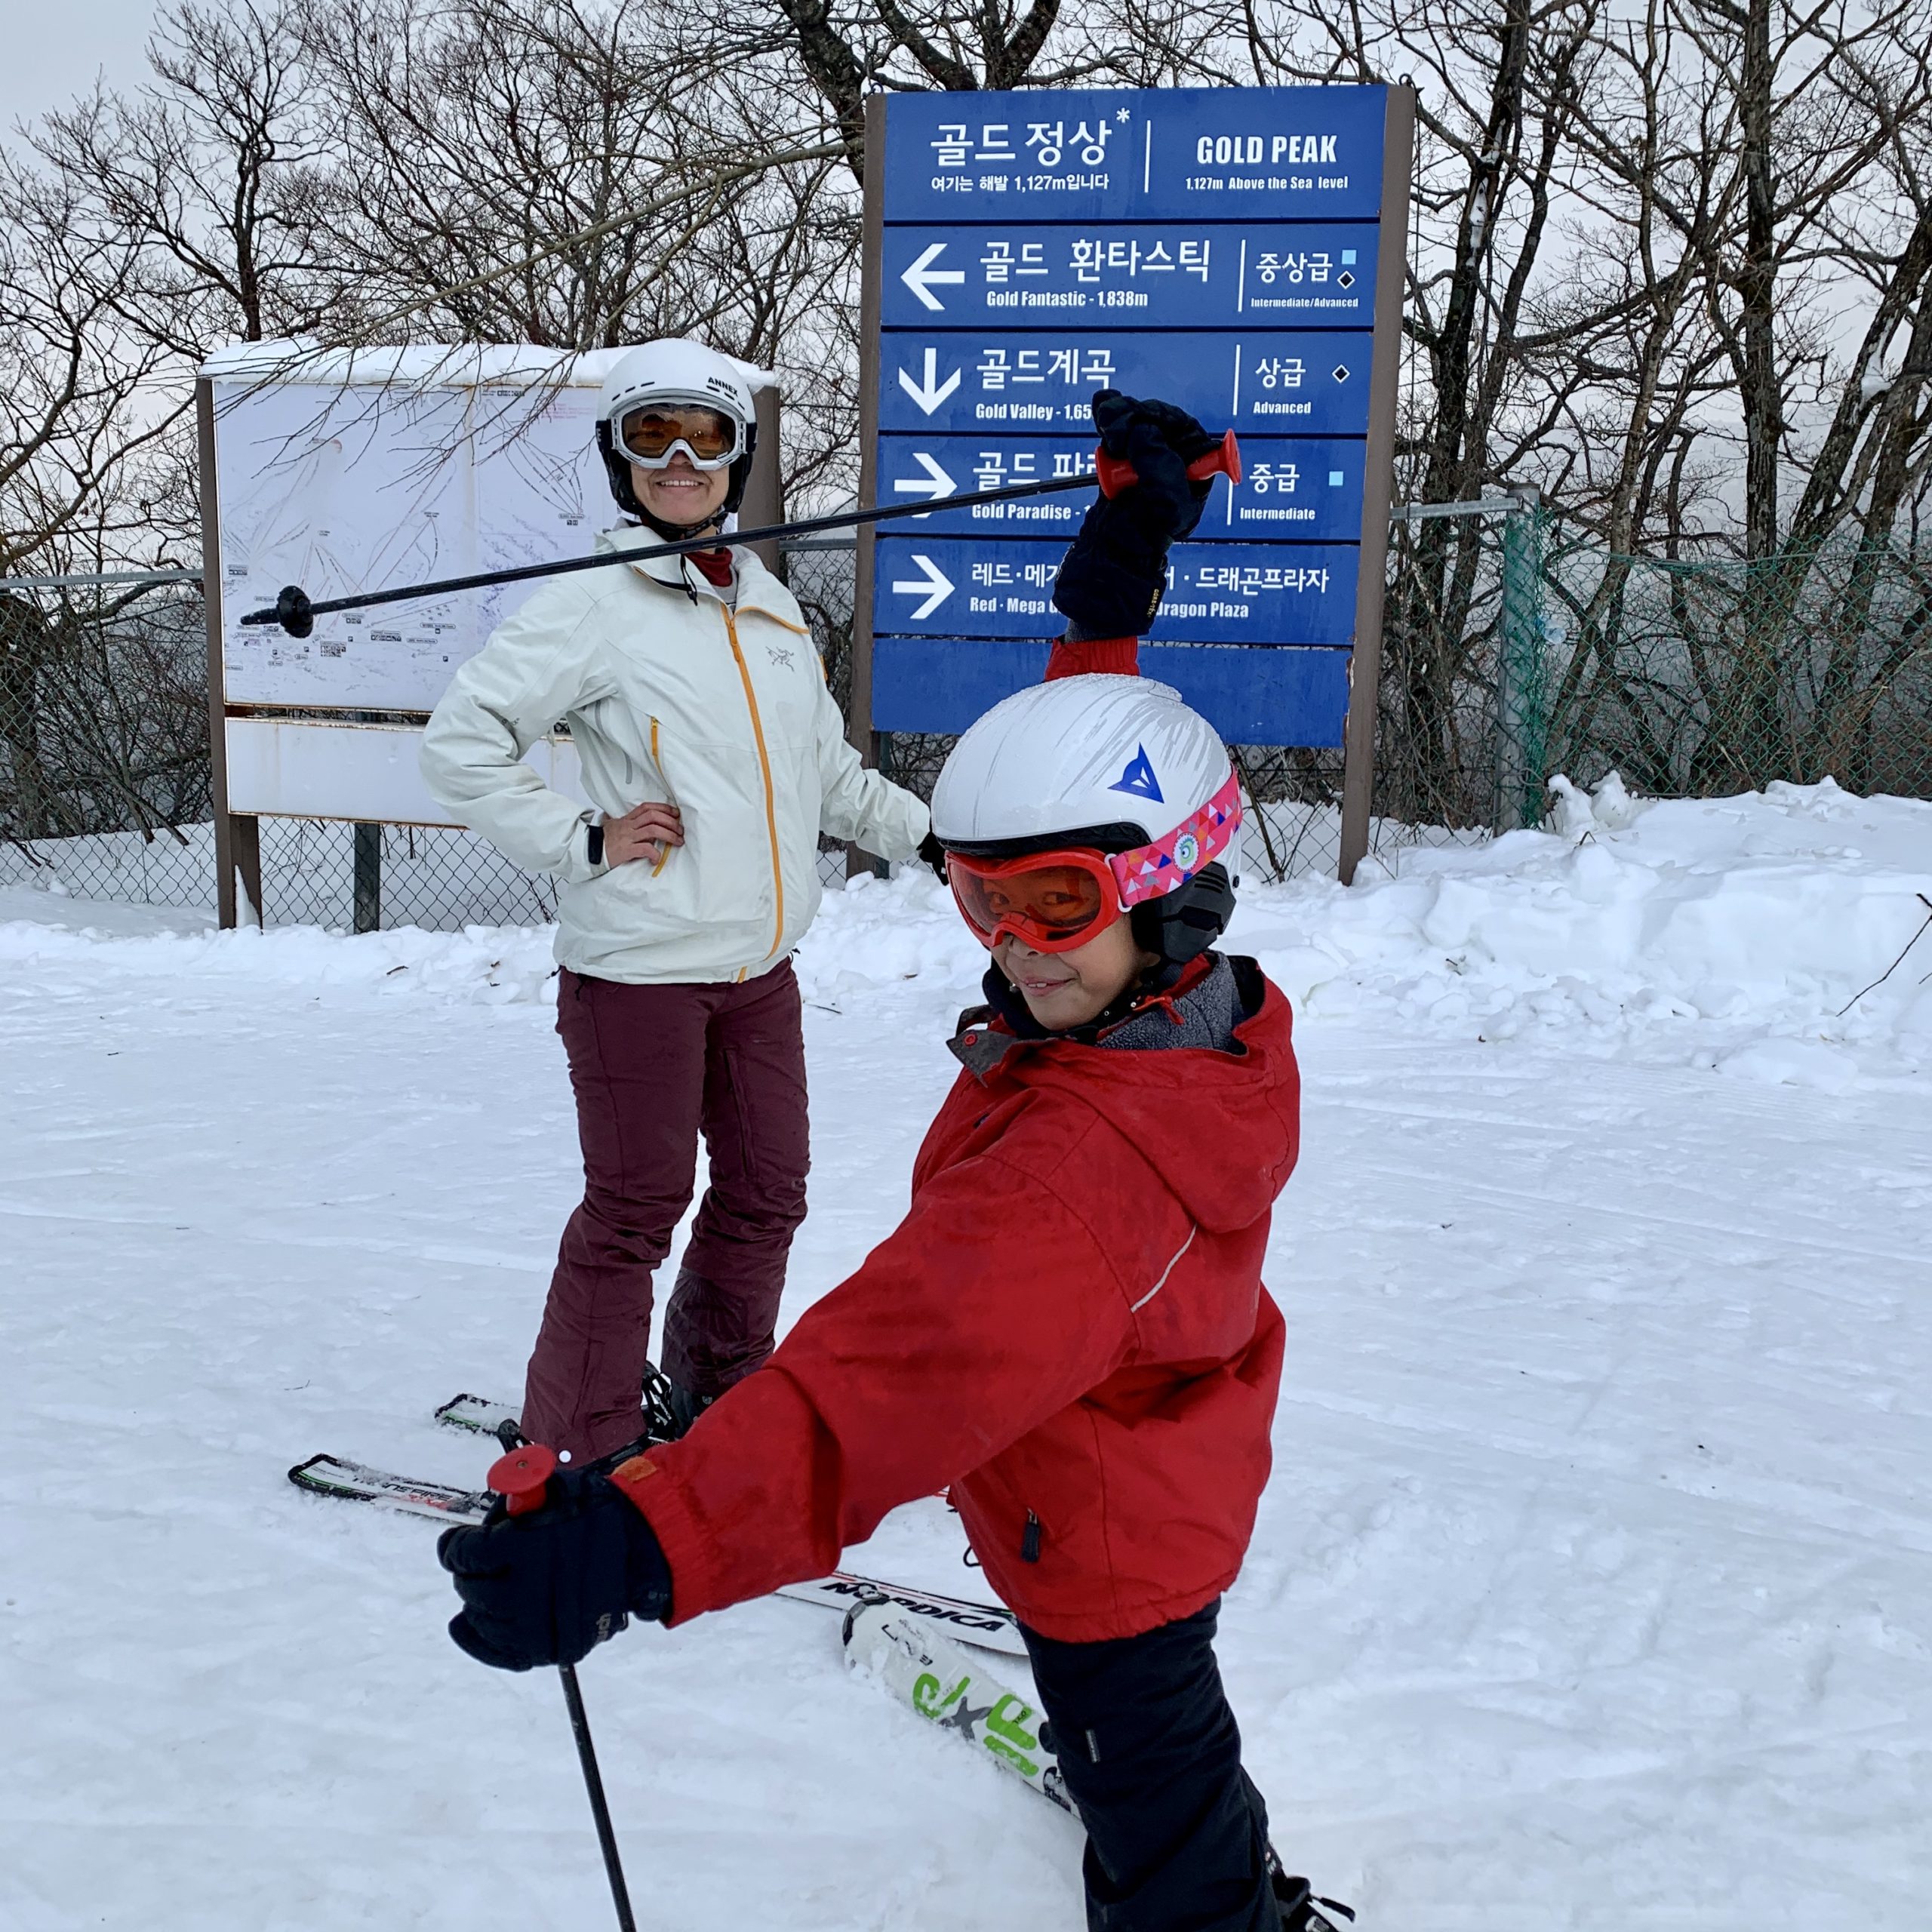 Skiing in YongPyong in PyeongChang